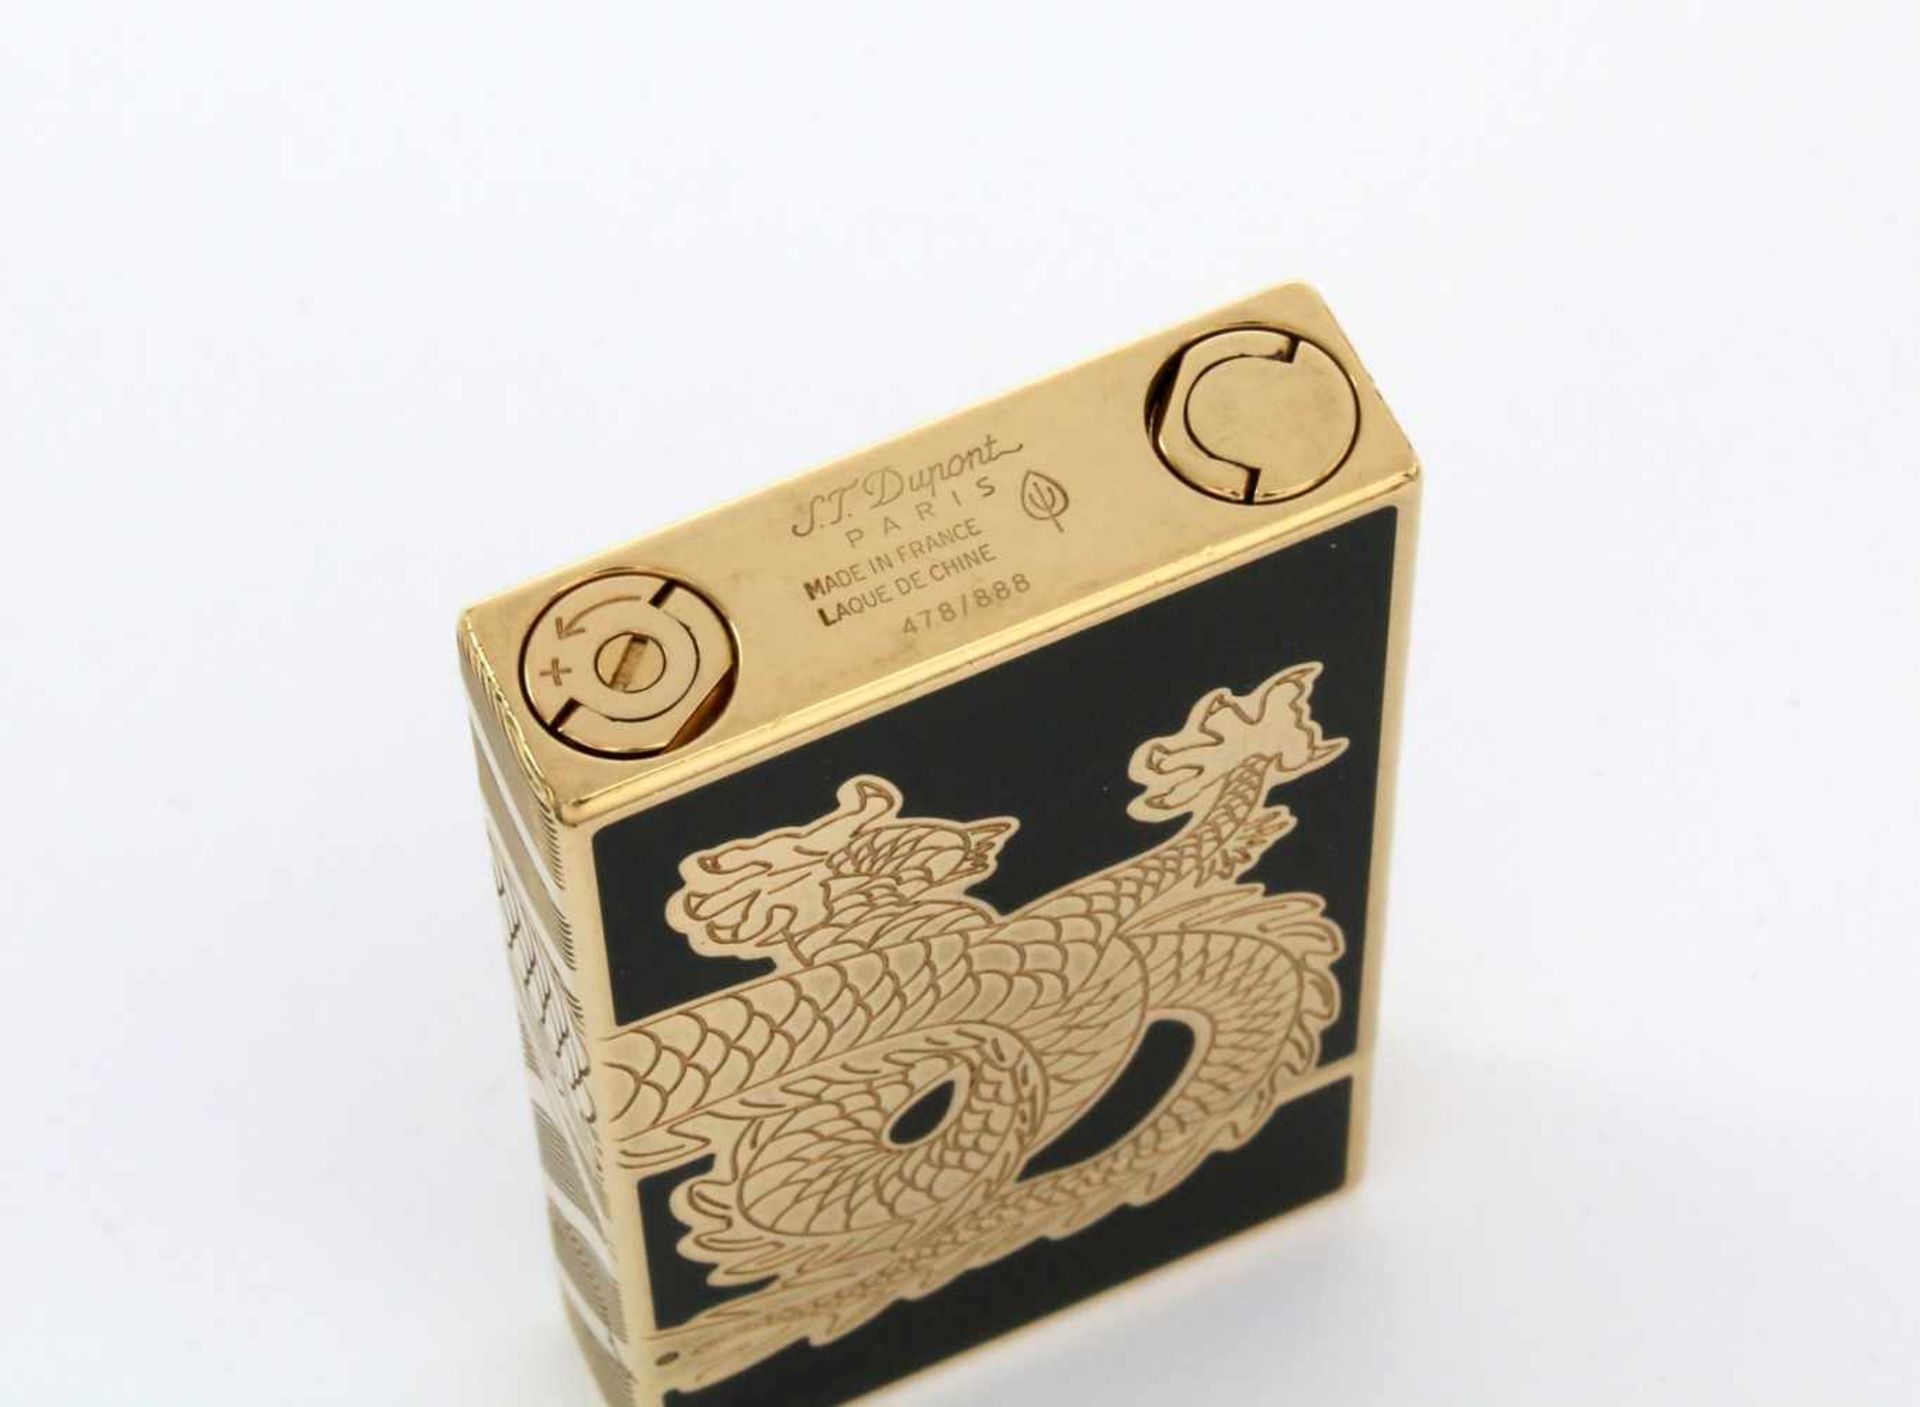 Luxus-Feuerzeug S. T. Dupont 2012 Lim. Ed. Year of the Dragon Chinalack schwarz / vergoldet, tief - Bild 7 aus 9